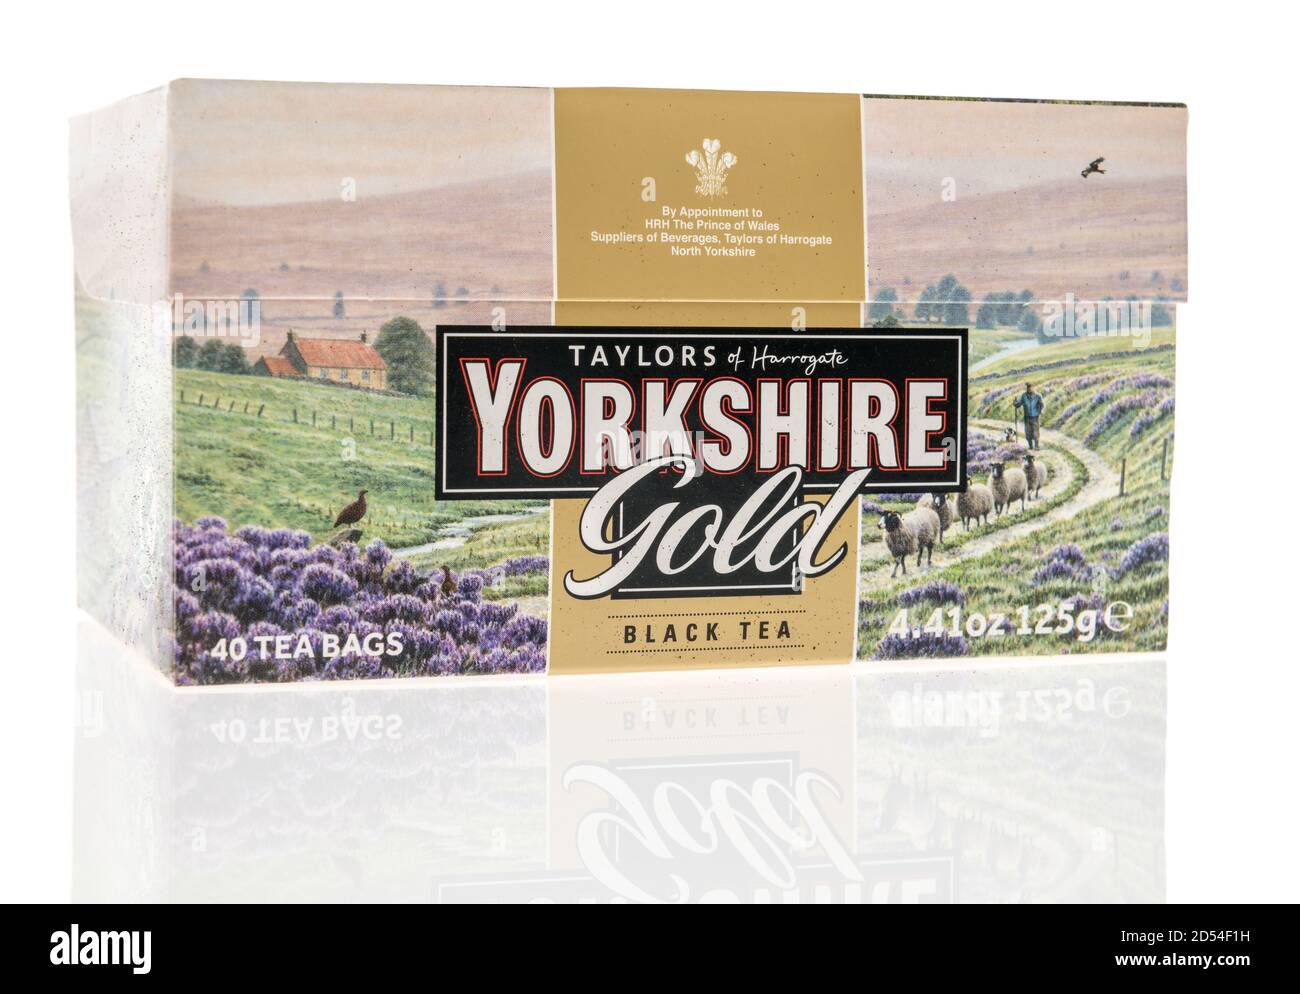 Winneconne, WI - 6. Oktober 2020: Ein Paket von Taylors Yorkshire Gold schwarzen Tee auf einem isolierten Hintergrund. Stockfoto